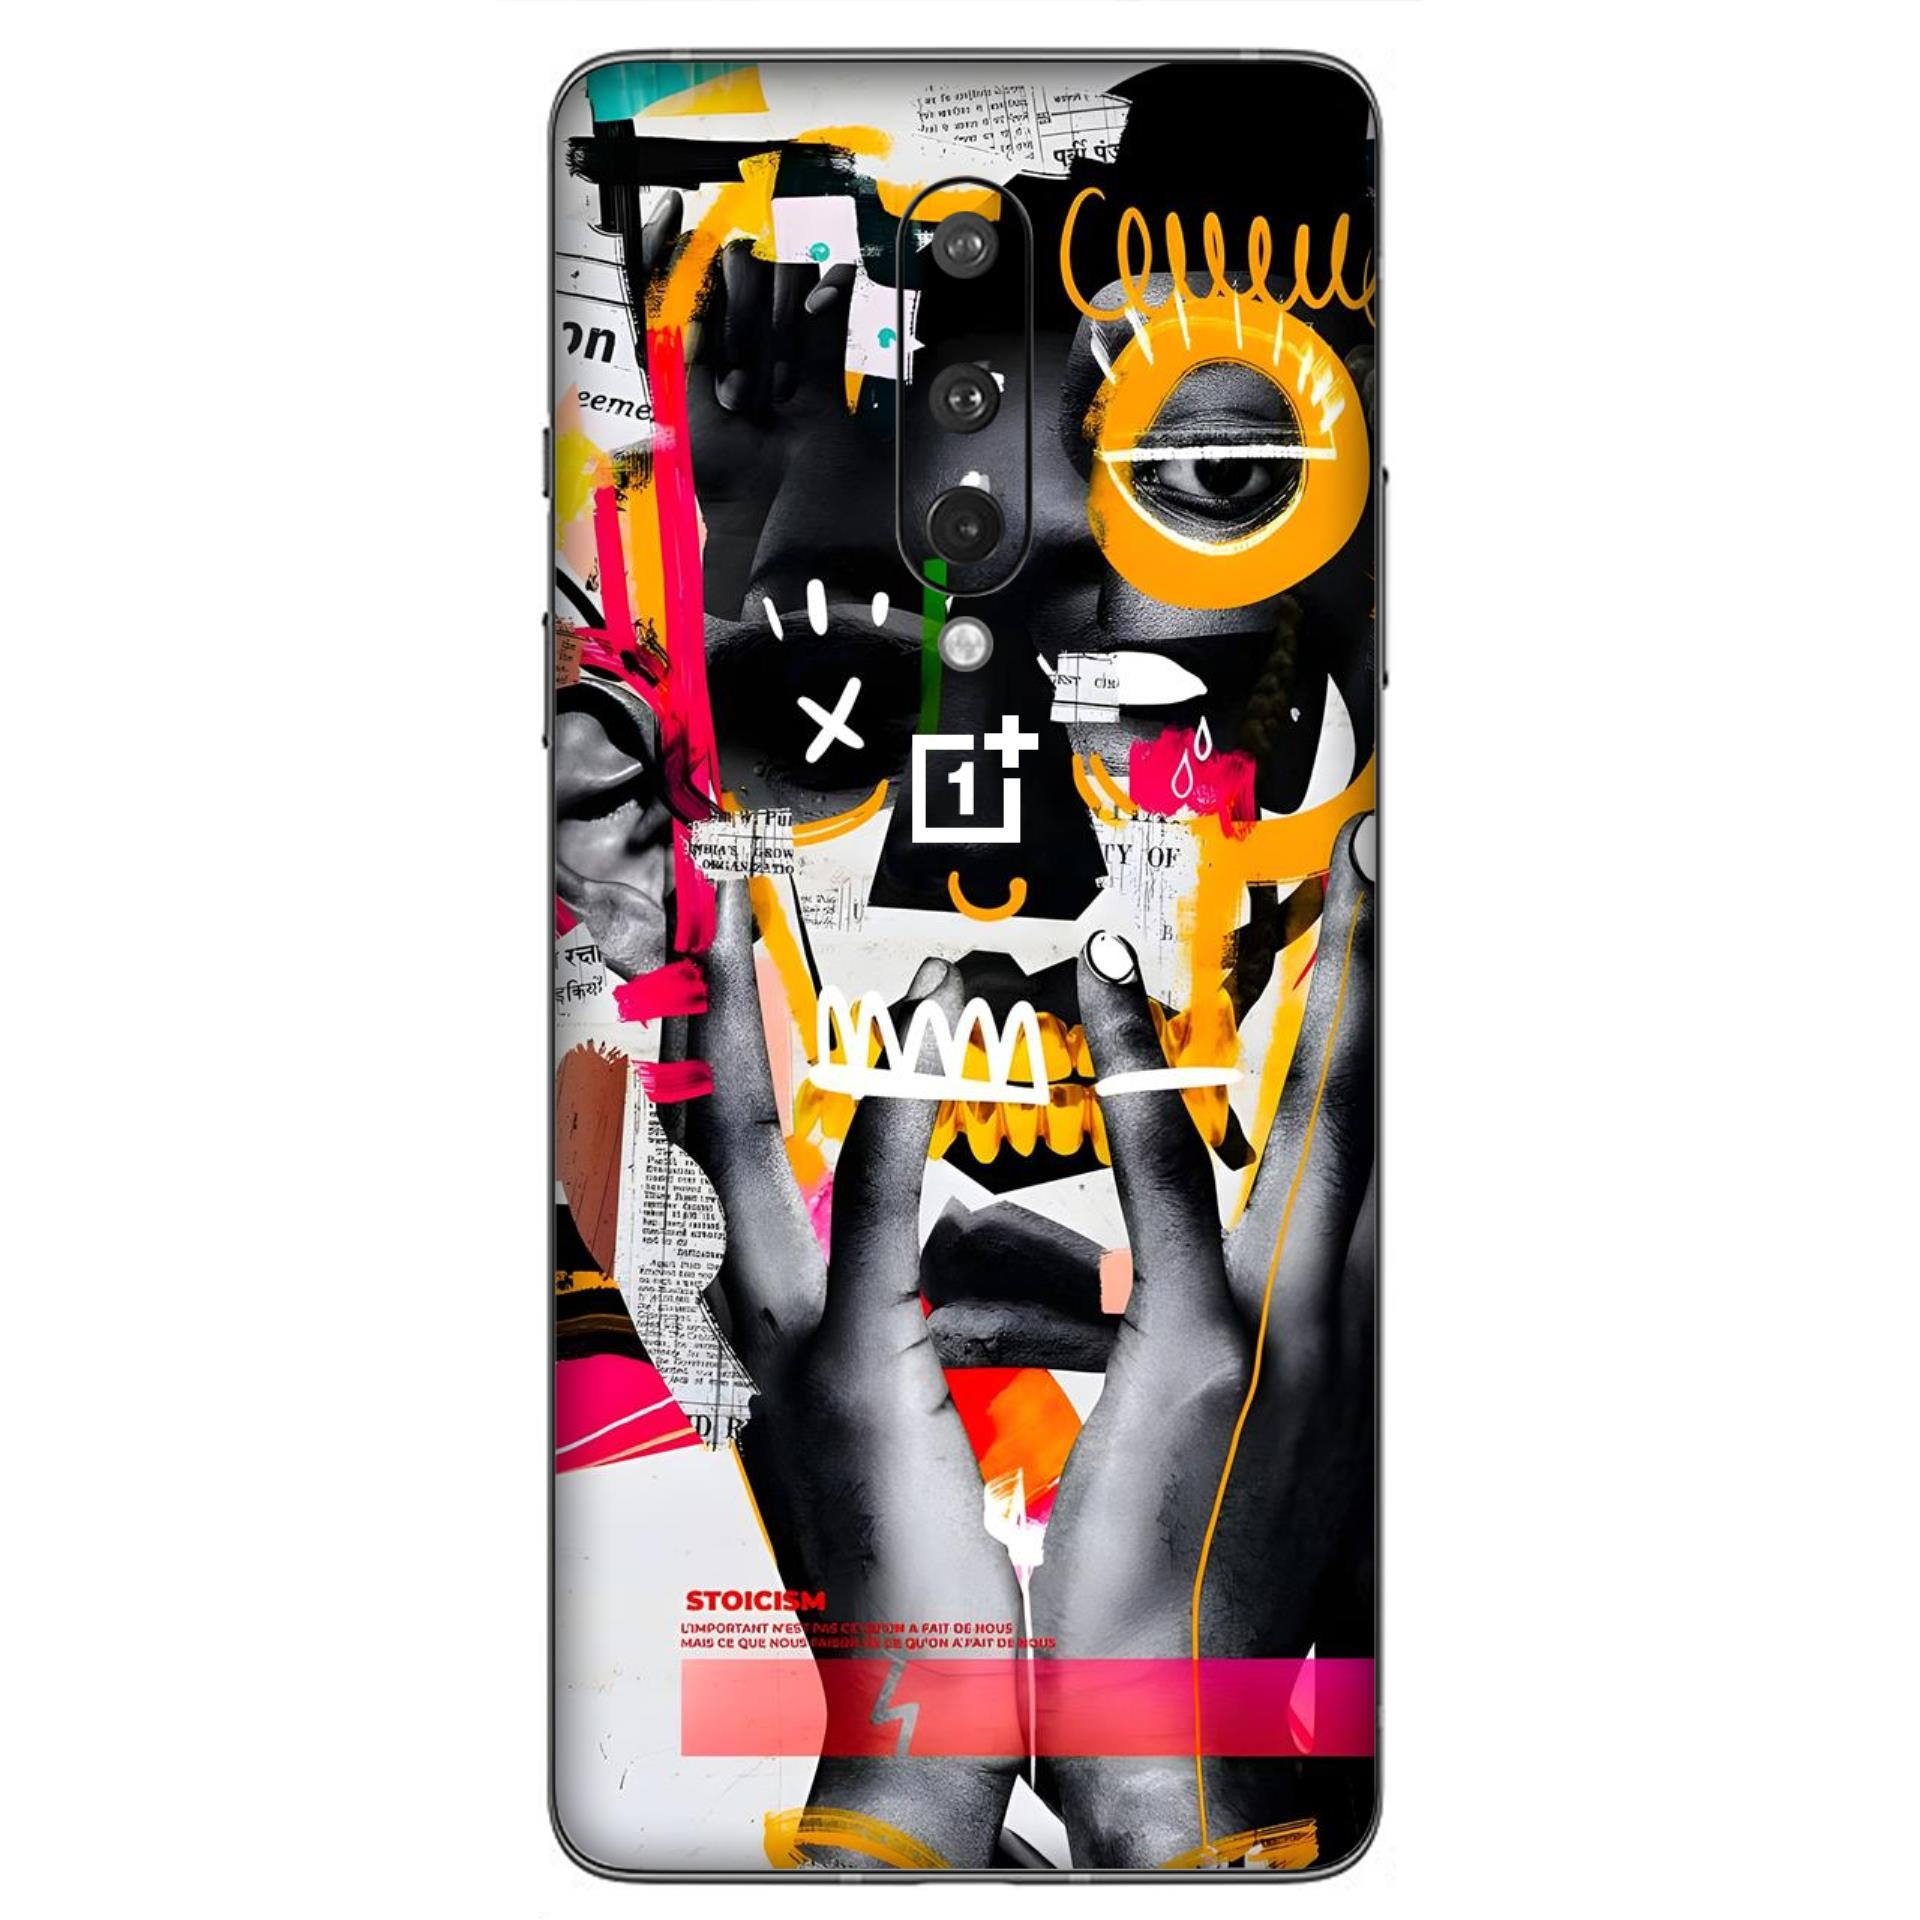 OnePlus 8 Skins & Wraps